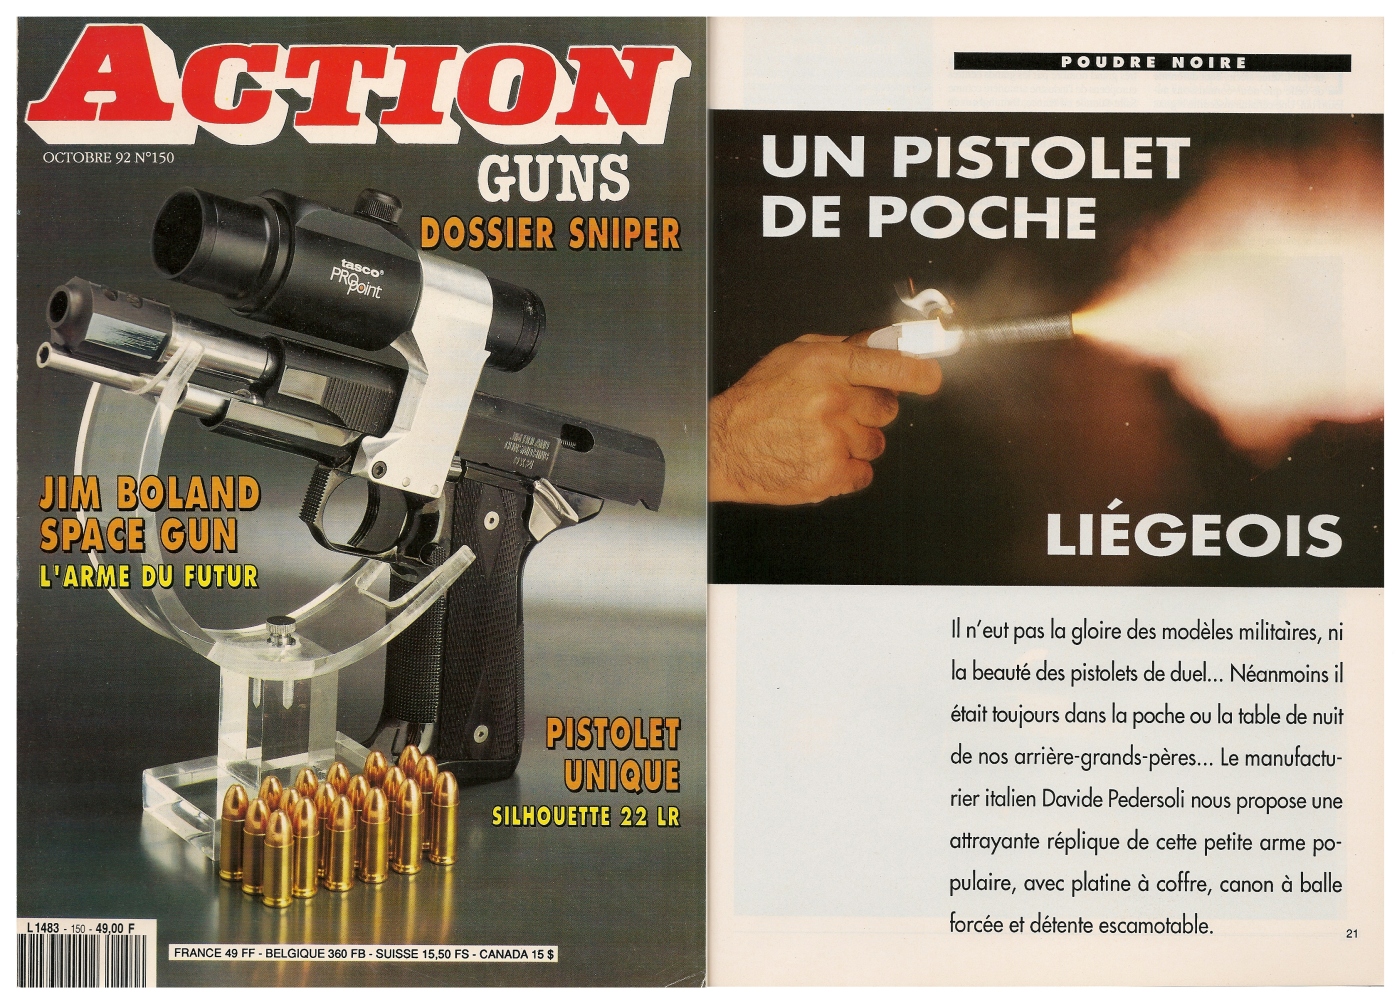 Le banc d'essai de la réplique de pistolet de poche liégeois a été publié sur 4 pages dans le magazine Action Guns n°150 (octobre 1992). 